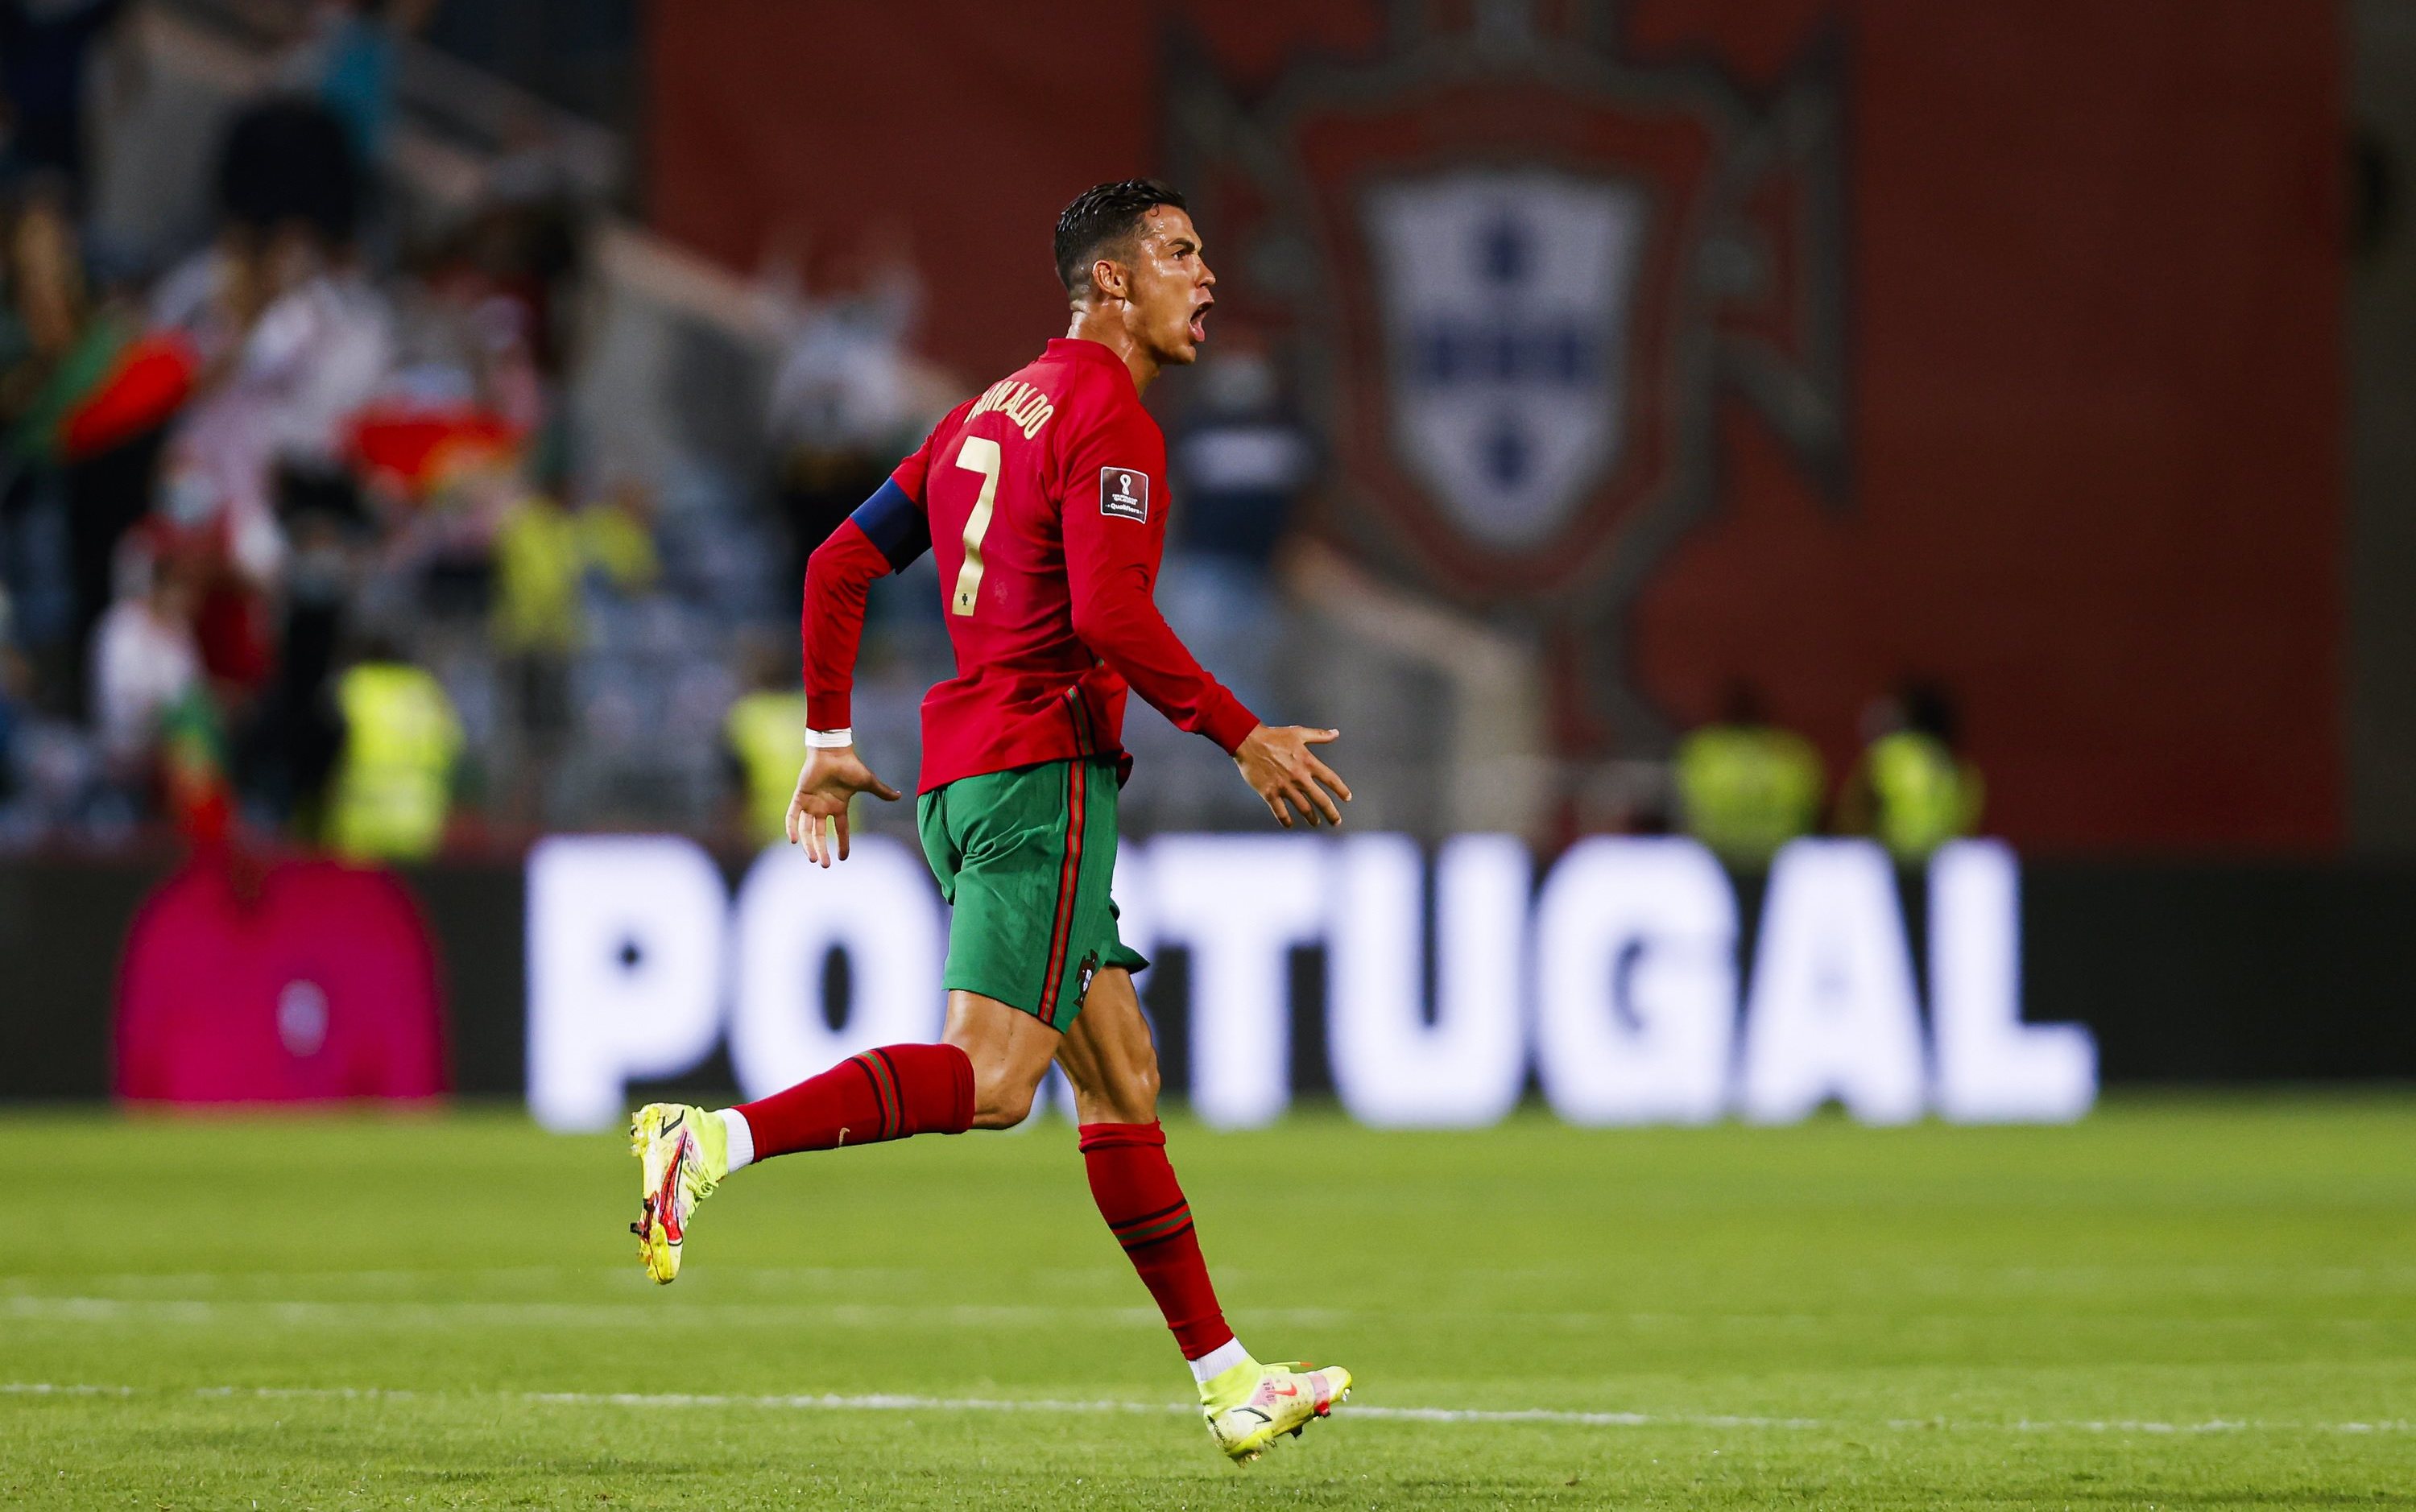 Ronaldo, phá kỷ lục: Ronaldo vừa phá kỷ lục ghi bàn của cầu thủ Ali Daei trong đội tuyển quốc gia! Hãy xem hình ảnh liên quan để cảm nhận niềm vui và sự tự hào của Ronaldo cũng như sự cống hiến của anh cho bóng đá.